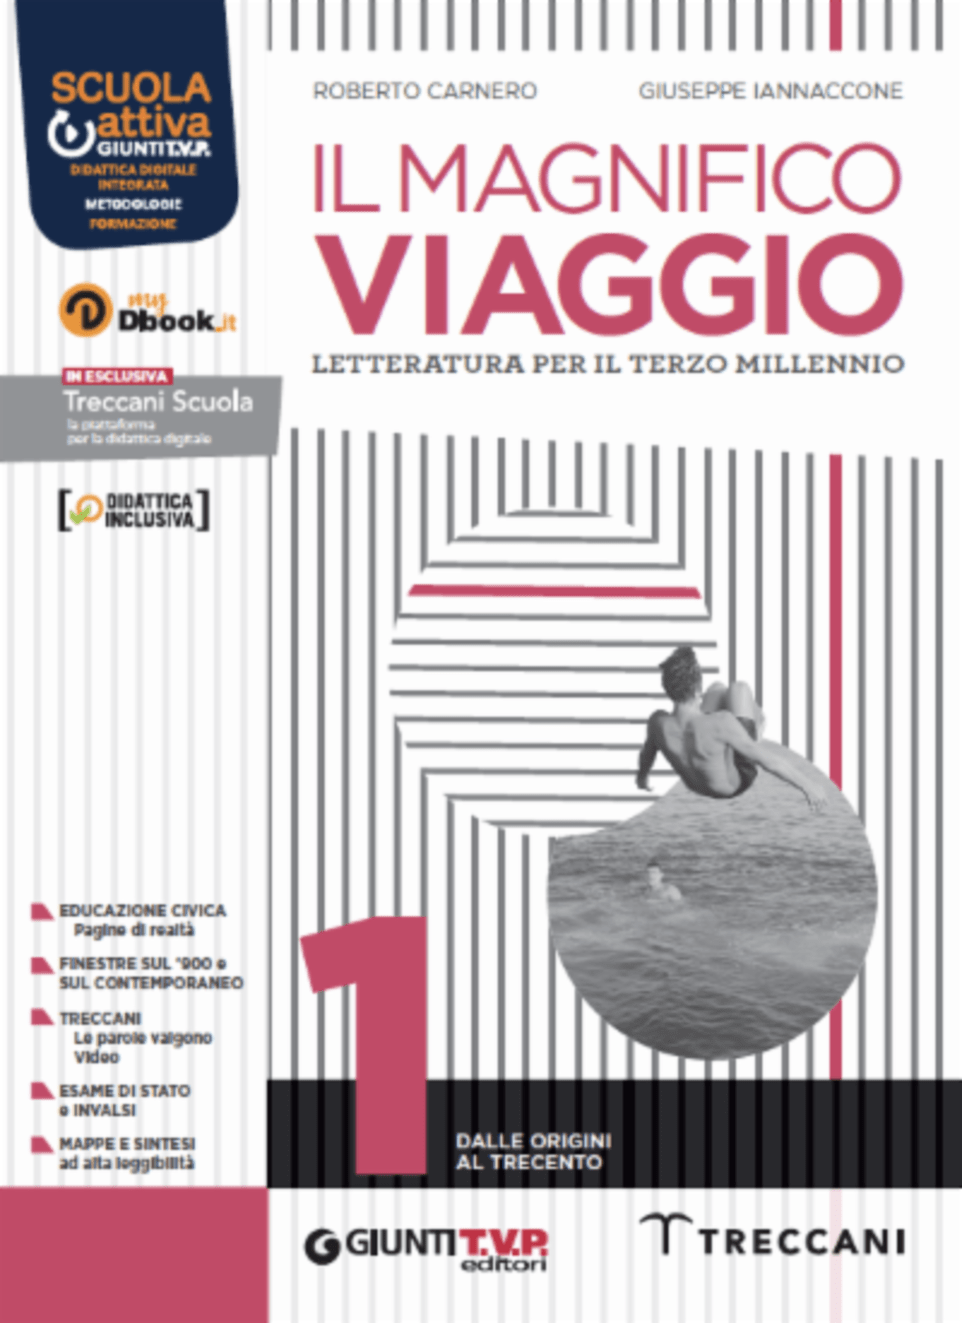 IL MAGNIFICO VIAGGIO VOL 1 + SCRITTURA - EDIZIONE DIGITALE